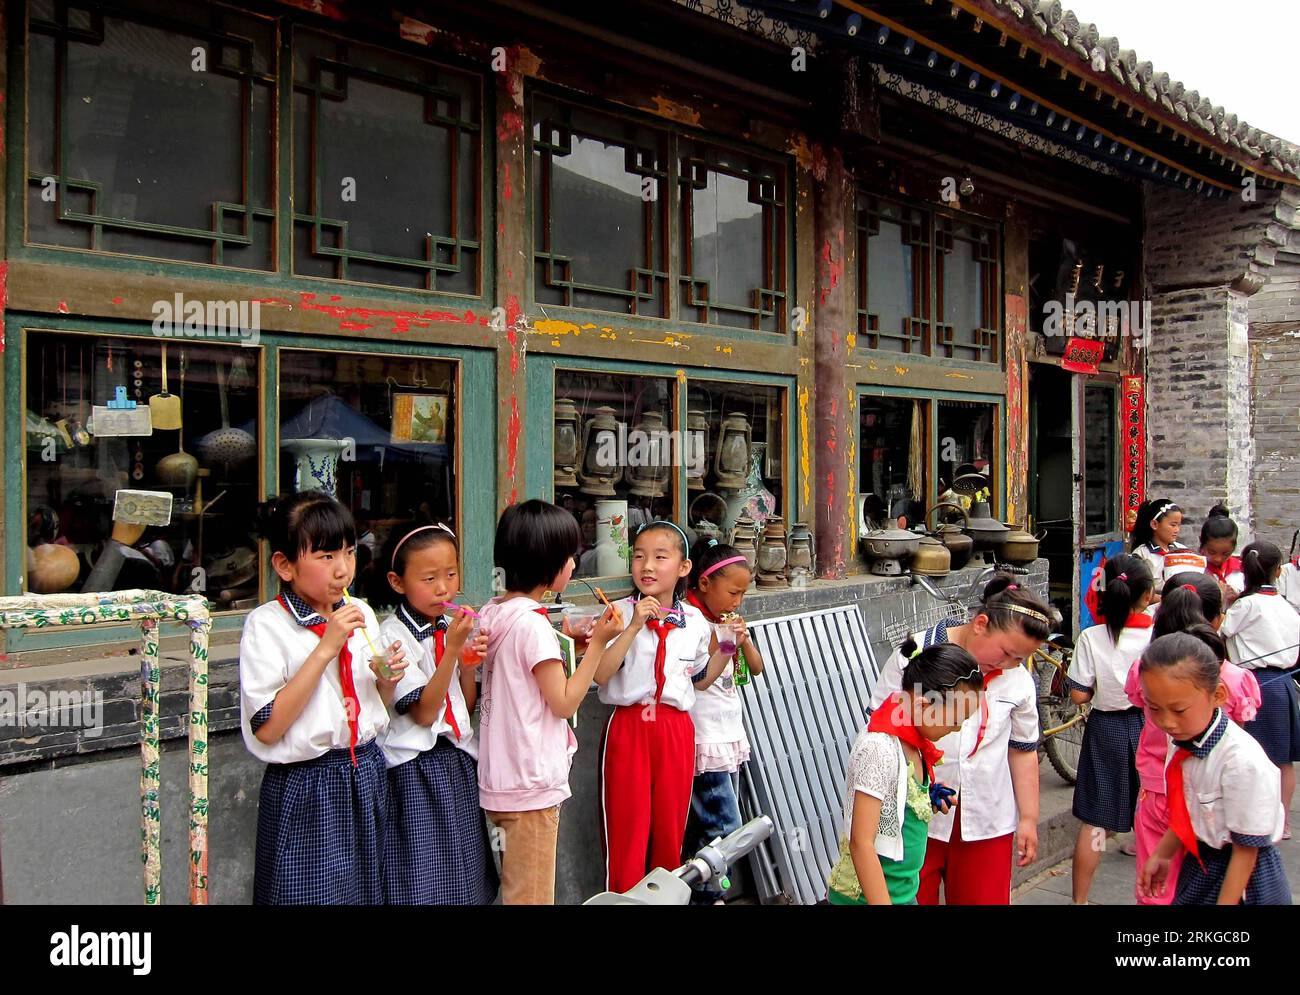 Bildnummer : 55578735 Datum : 08.07.2011 Copyright : imago/Xinhua (110708) -- HOHHOT, 8 juillet 2011 (Xinhua) -- des enfants jouent dans une vieille rue avec le style architectural des dynasties Ming (1368-1644) et Qing (1644-1911), à Hohhot, capitale de la région autonome de Mongolie intérieure du nord de la Chine, le 8 juillet 2011. Le gouvernement local a enregistré 58 reliques culturelles immobilières dans la rue et réparé les anciennes architectures tout en conservant leur aspect ancien, afin de préserver les caractéristiques historiques et culturelles. (Xinhua/Zhang Ling) (ry) CHINA-HOHHOT-CULTURAL HERITAGE-PROTECTION (CN) PUBLICATIONx Banque D'Images